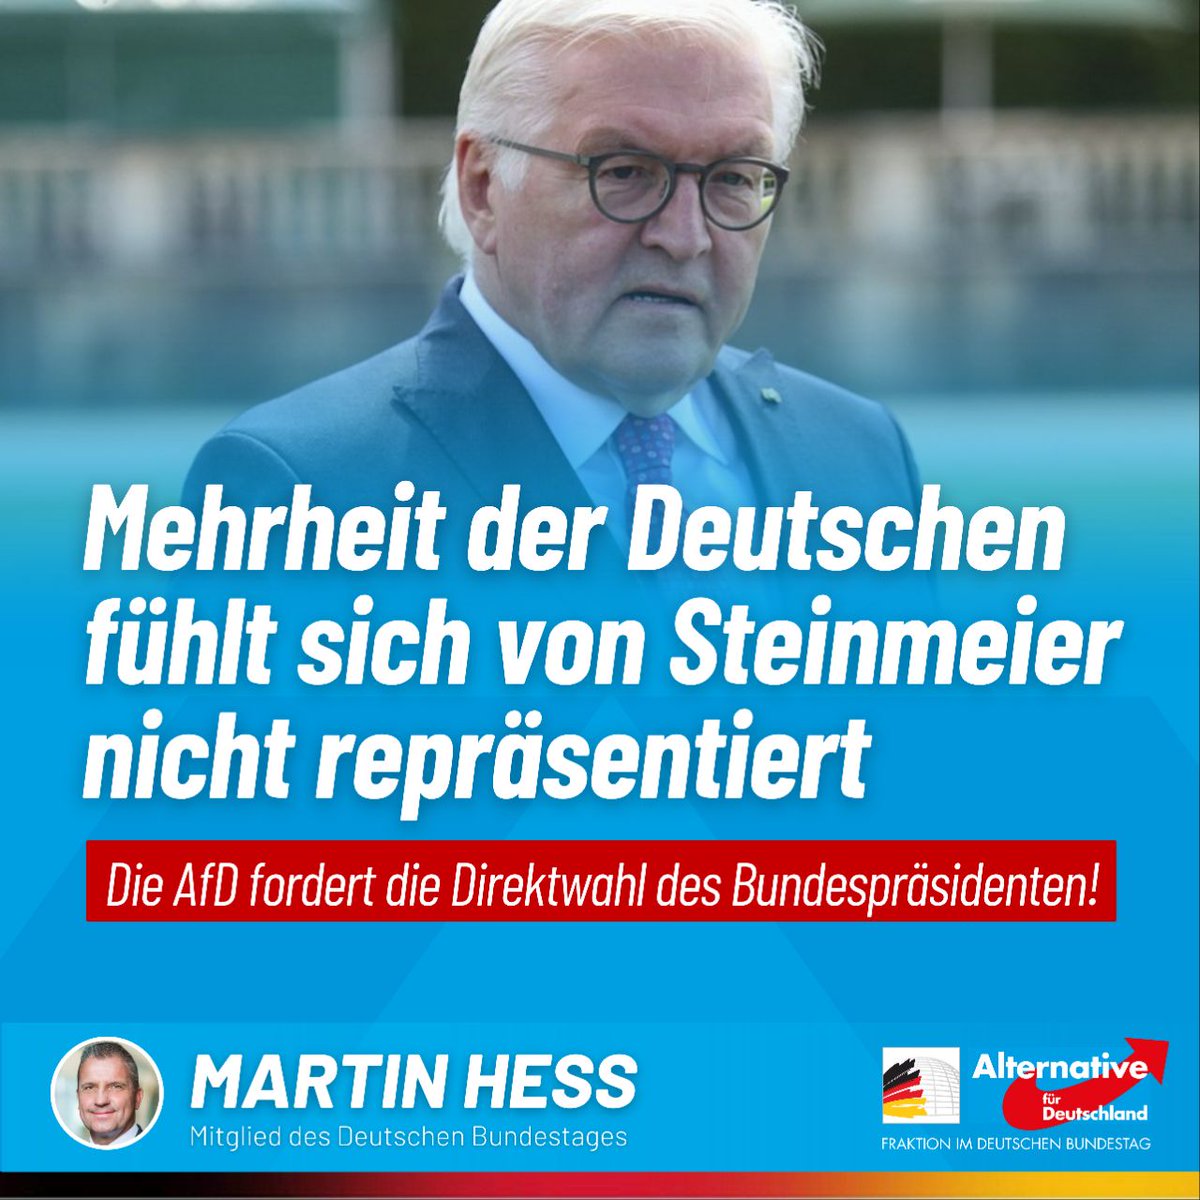 Frank-Walter Steinmeier tritt nicht nur regelmäßig in politische Fettnäpfchen, er verharmloste bereits linksextreme Gewalt, bezeichnete Deutsch als 'Täter-Sprache' und AfD-Wähler indirekt als Ratten, während er sich immer wieder klar auf die Seite der Ampelregierung schlägt,…